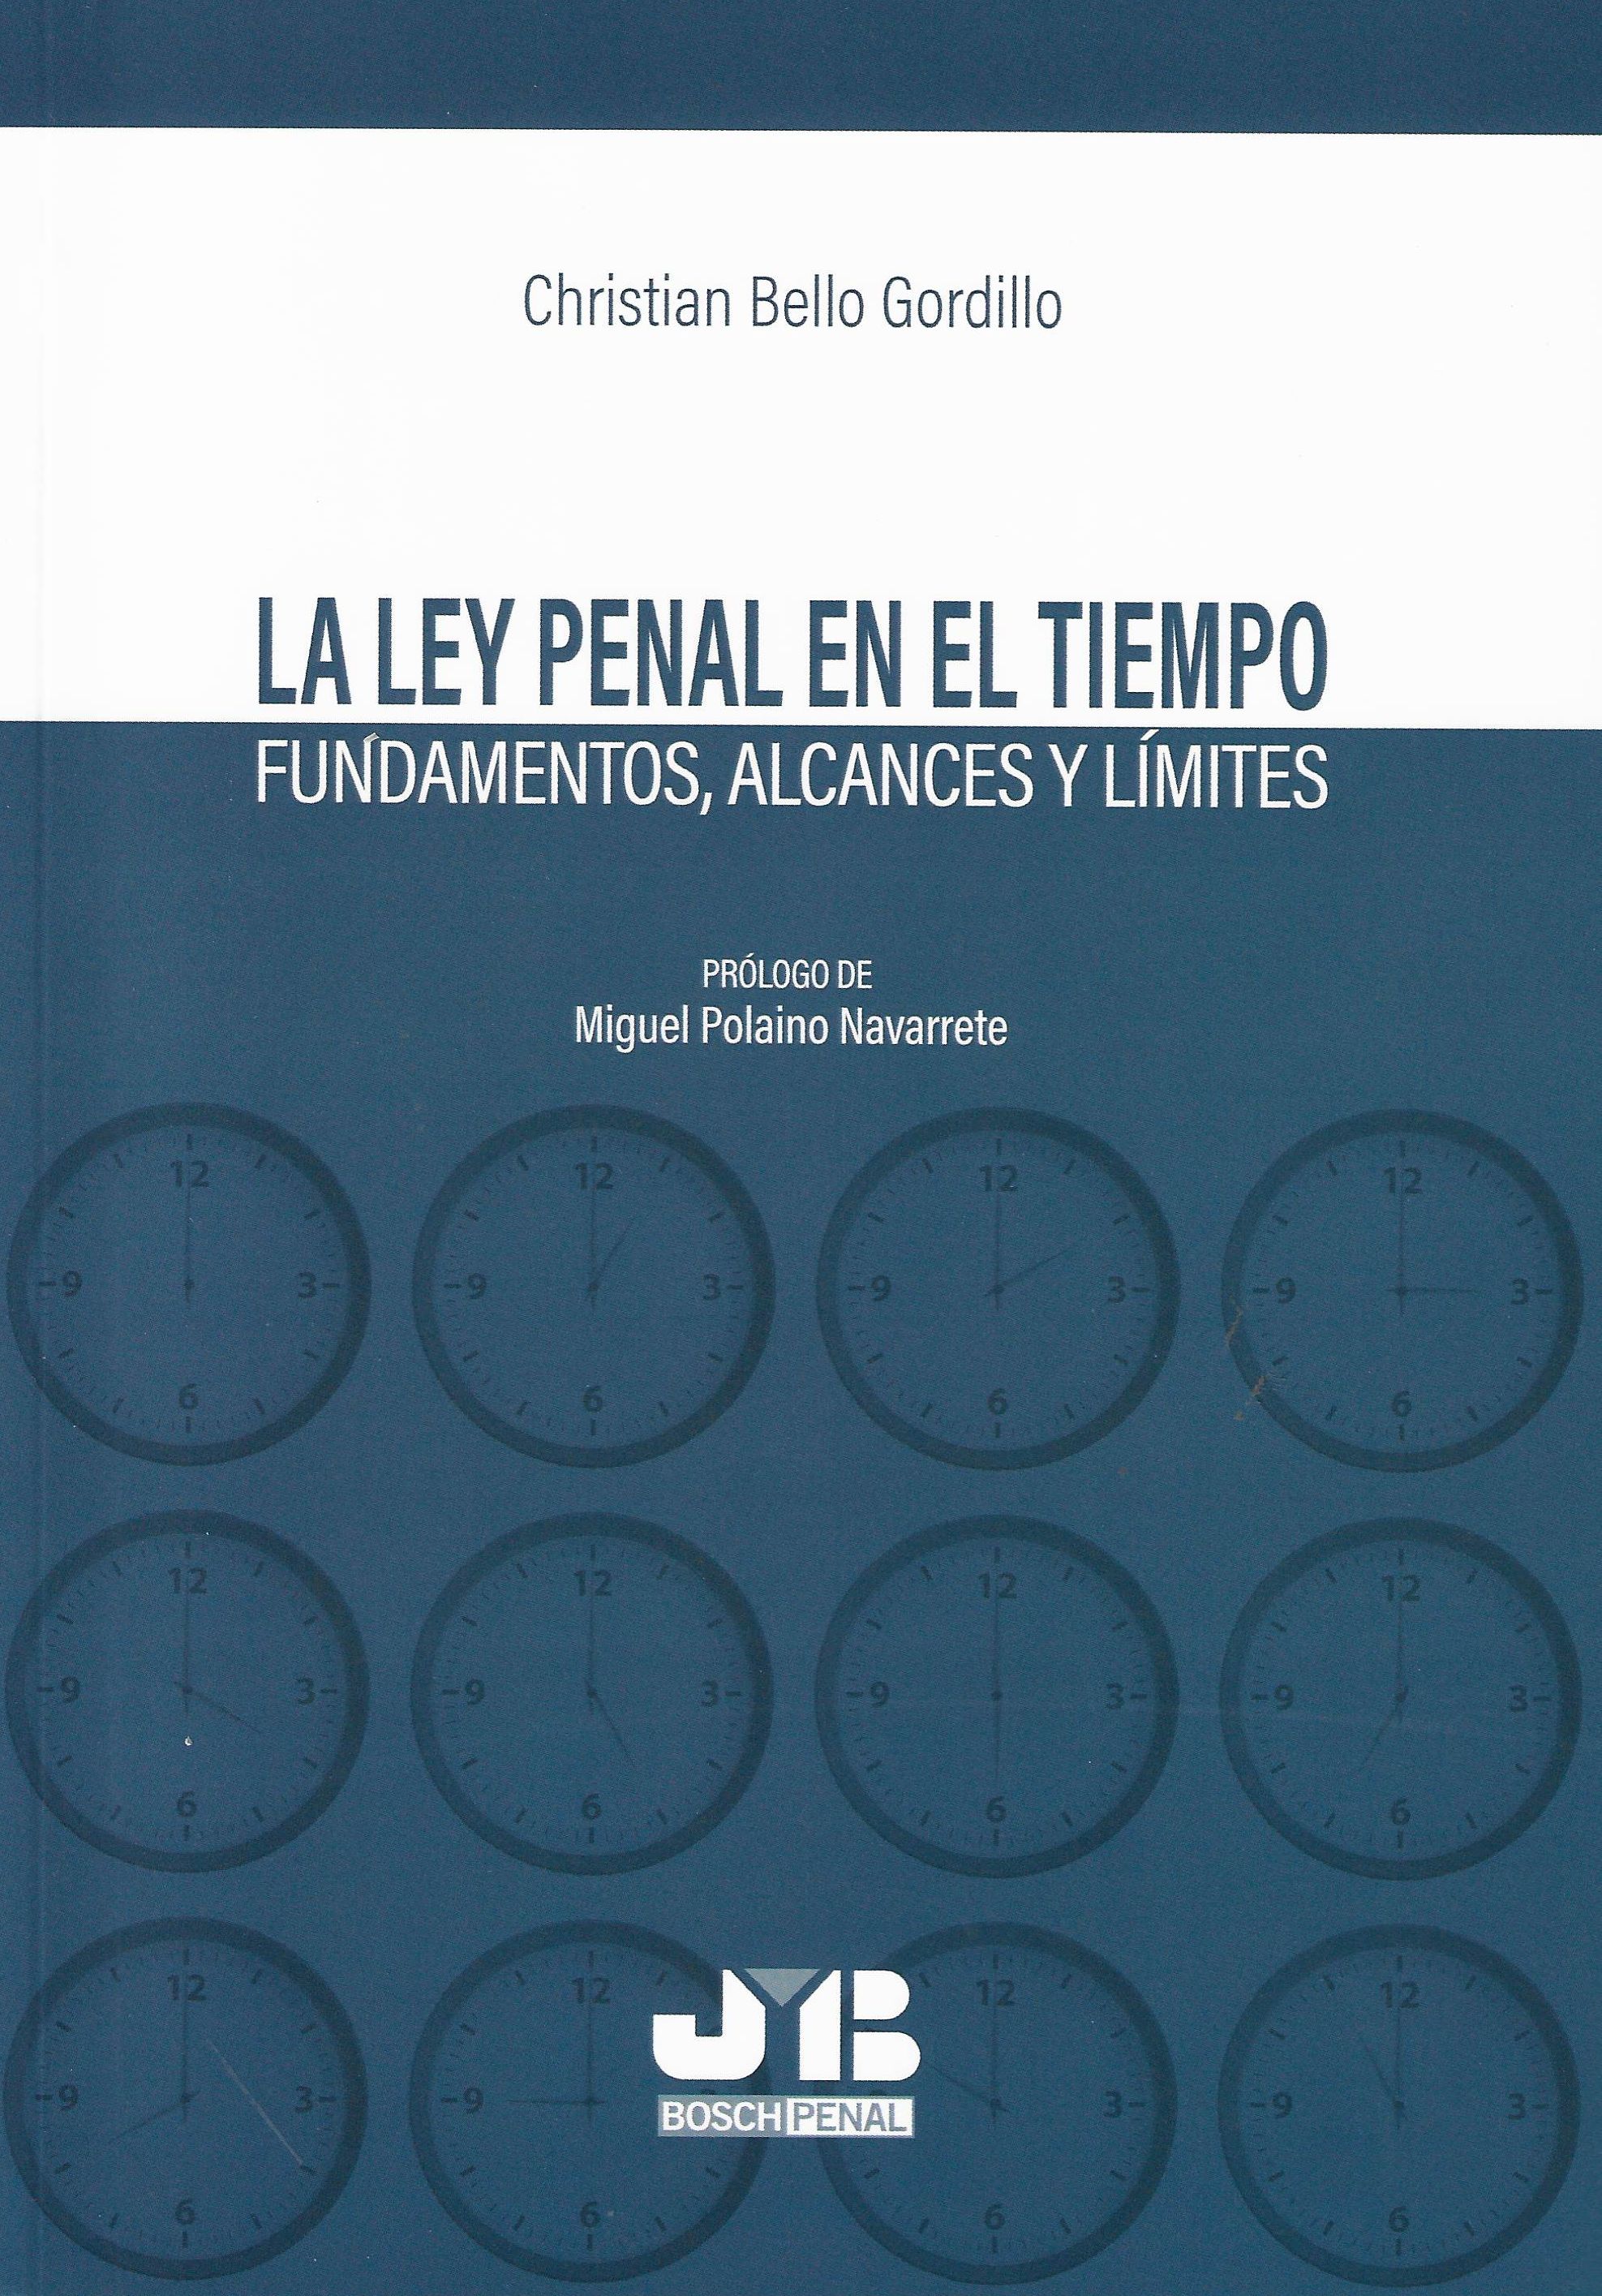 Imagen de portada del libro La ley penal en el tiempo